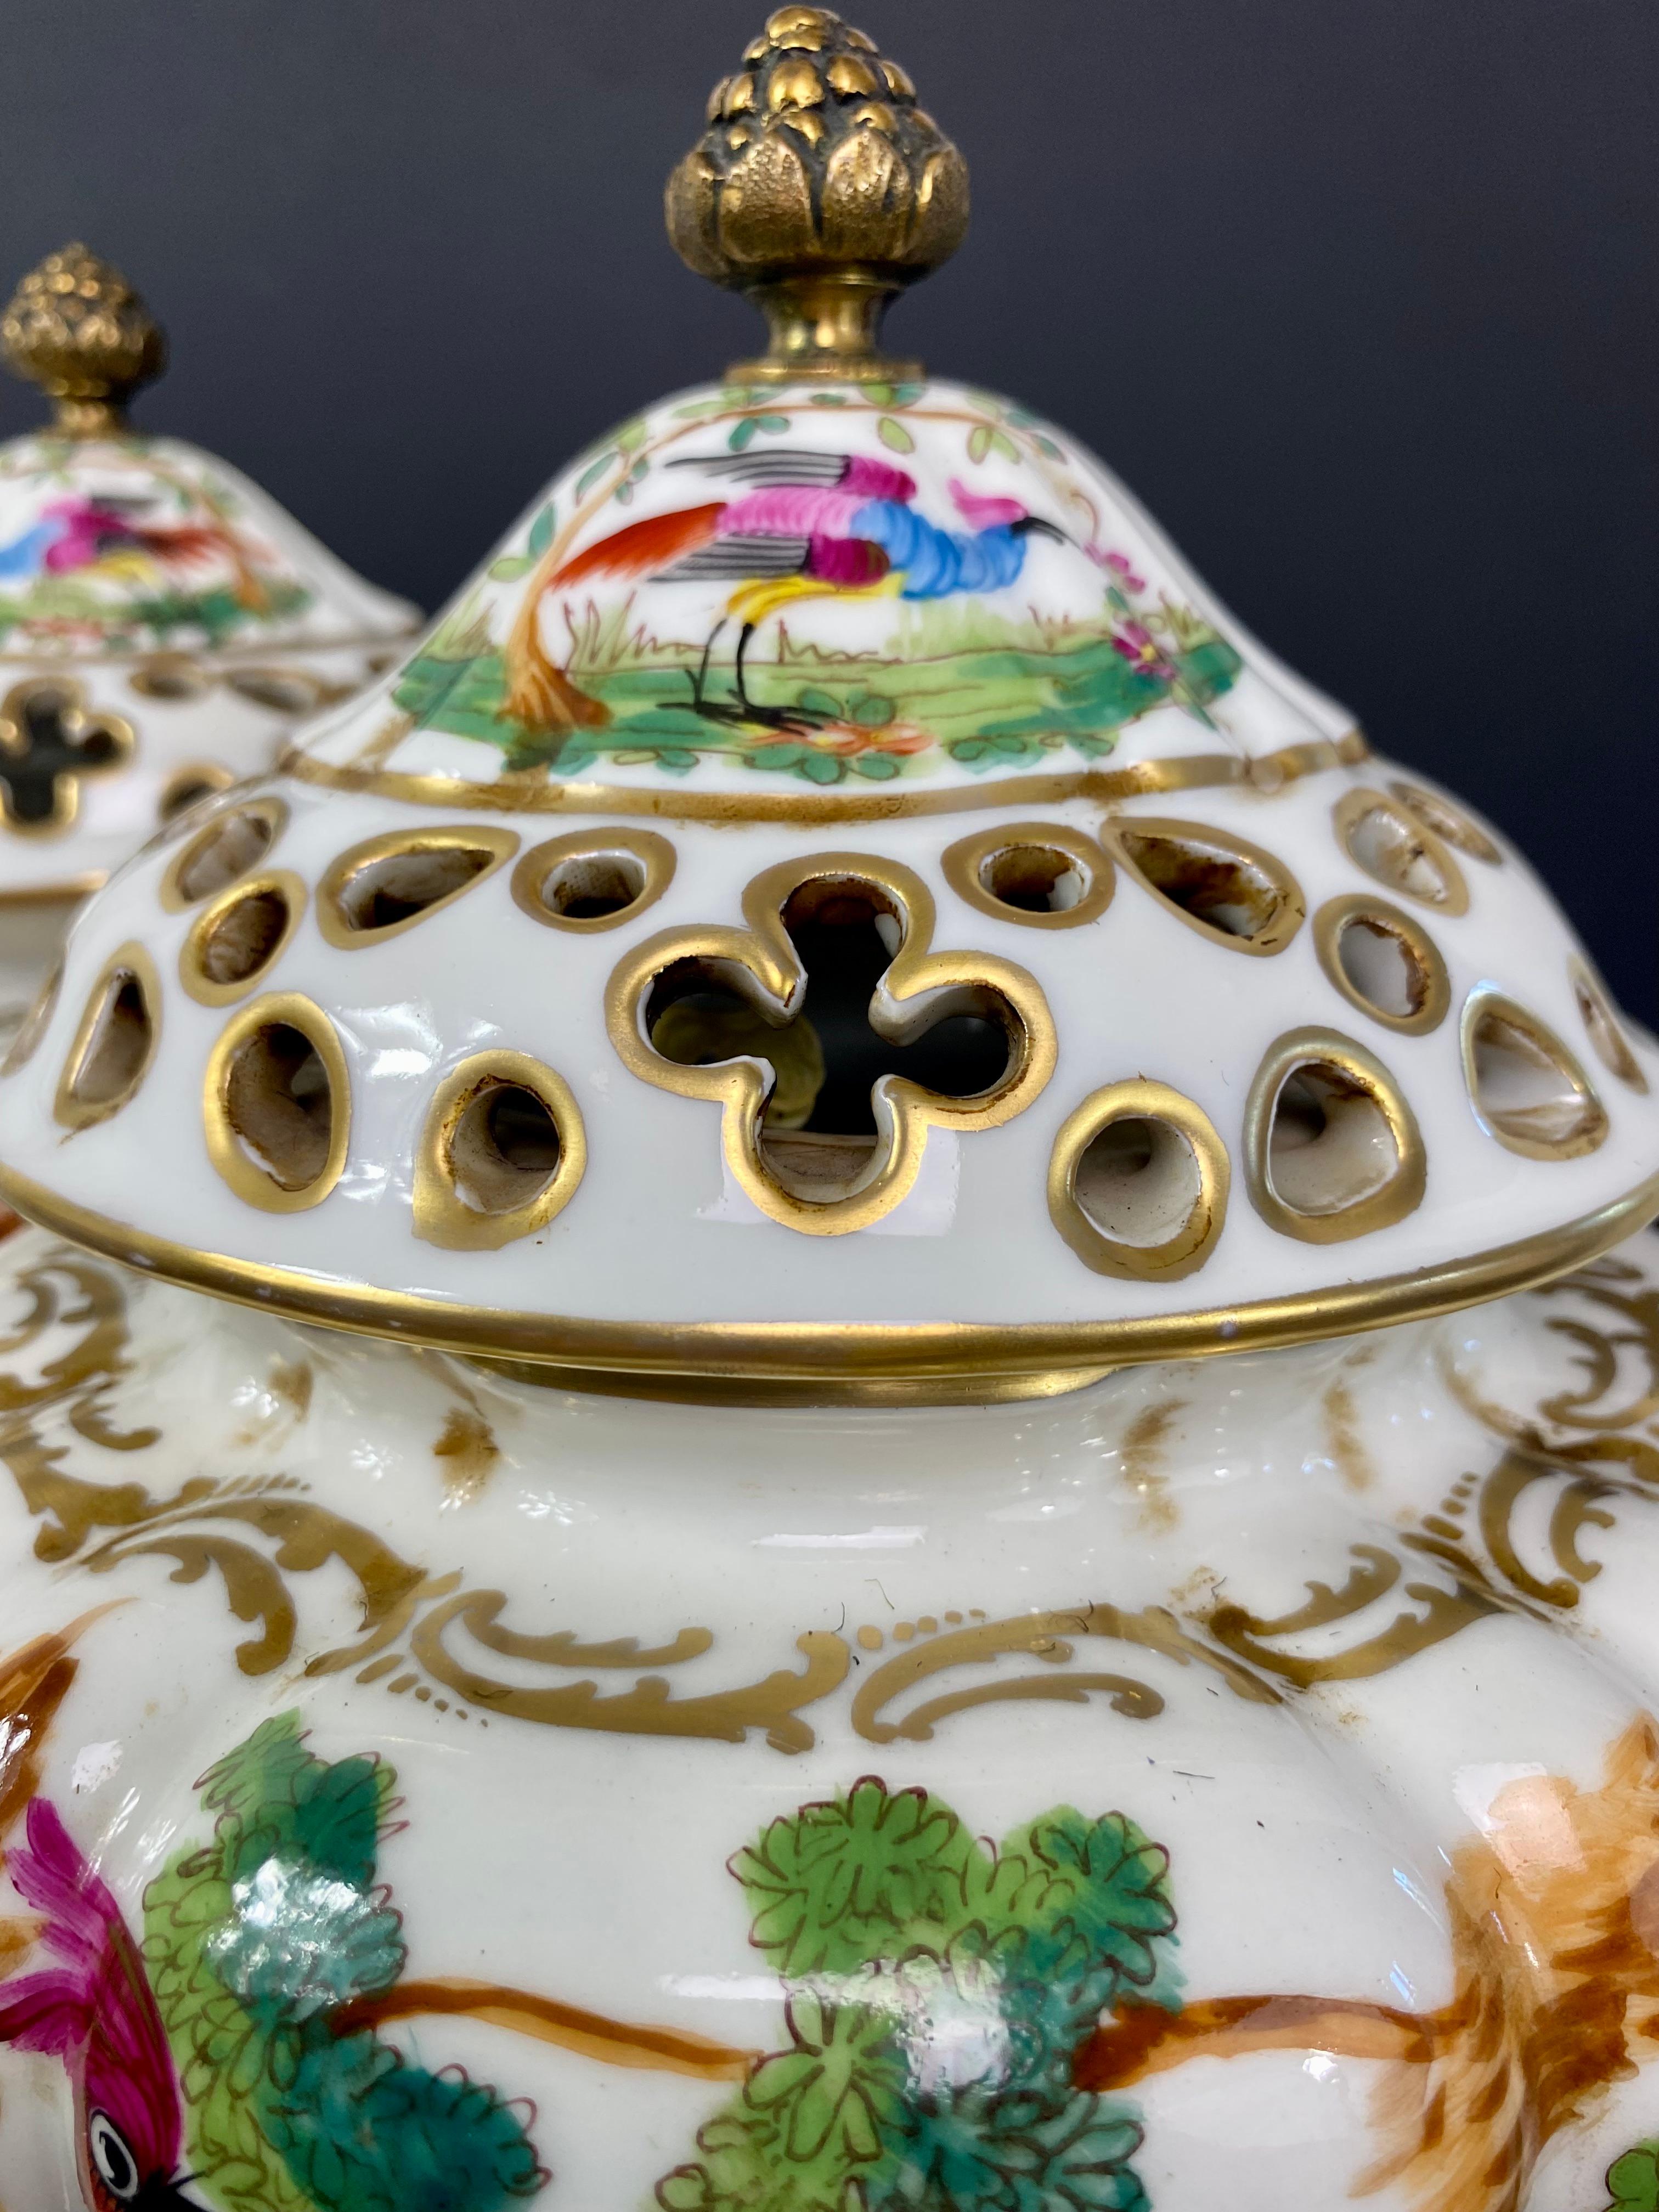 Pair of Pot Pourris - Perfume Burner - Decorative Dases Saxony Porcelain - XXth For Sale 1